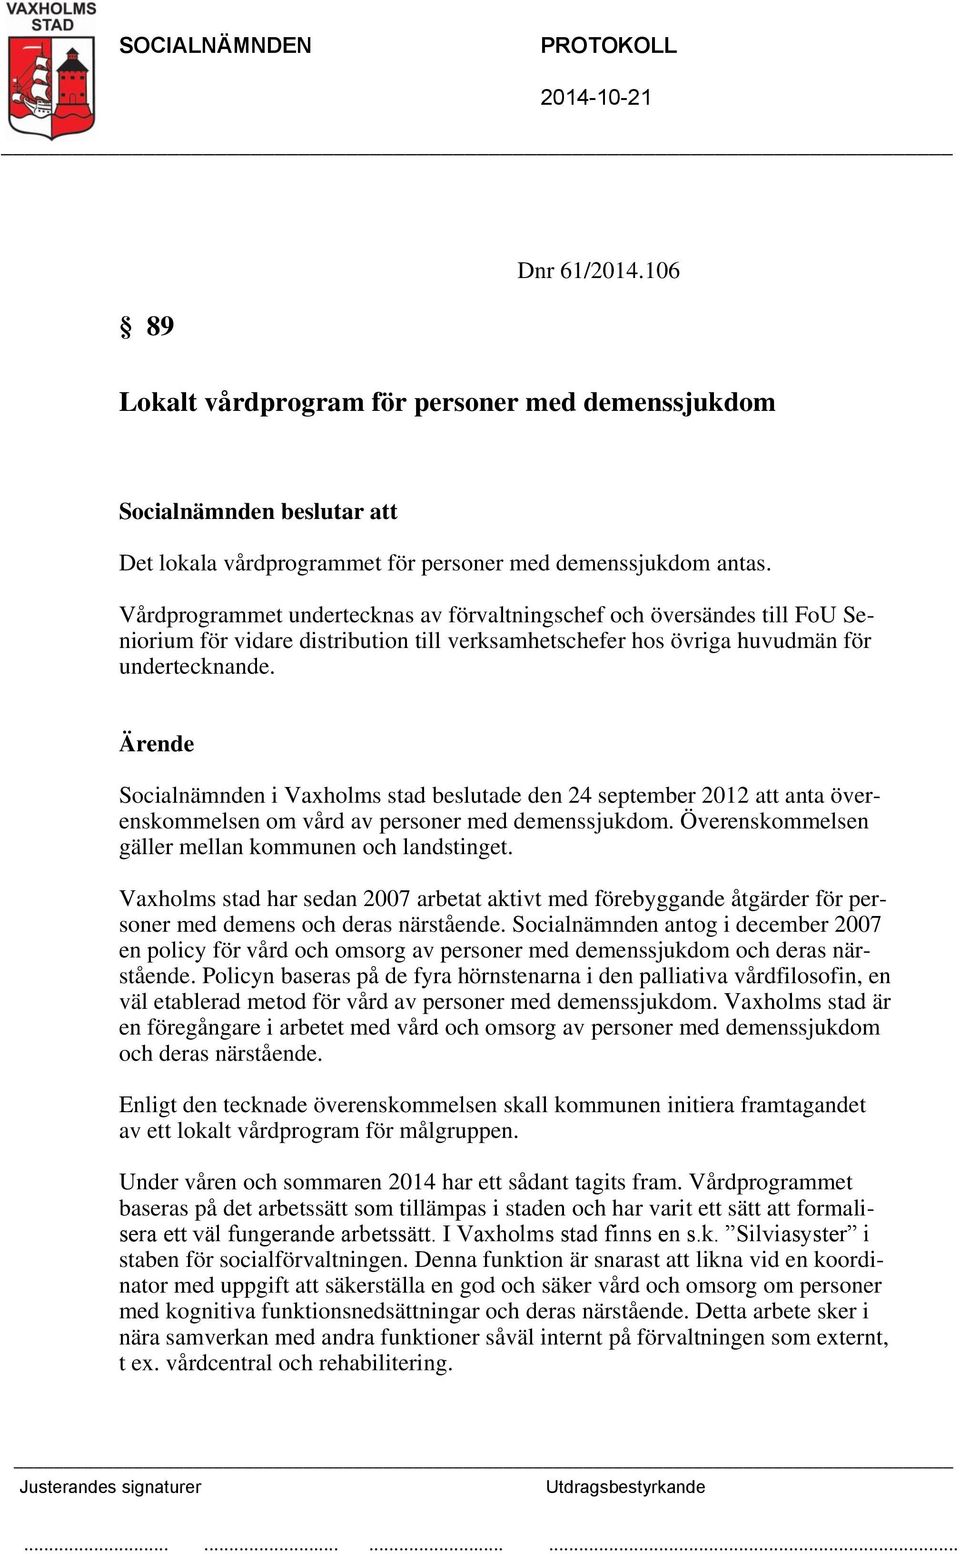 Ärende Socialnämnden i Vaxholms stad beslutade den 24 september 2012 att anta överenskommelsen om vård av personer med demenssjukdom. Överenskommelsen gäller mellan kommunen och landstinget.